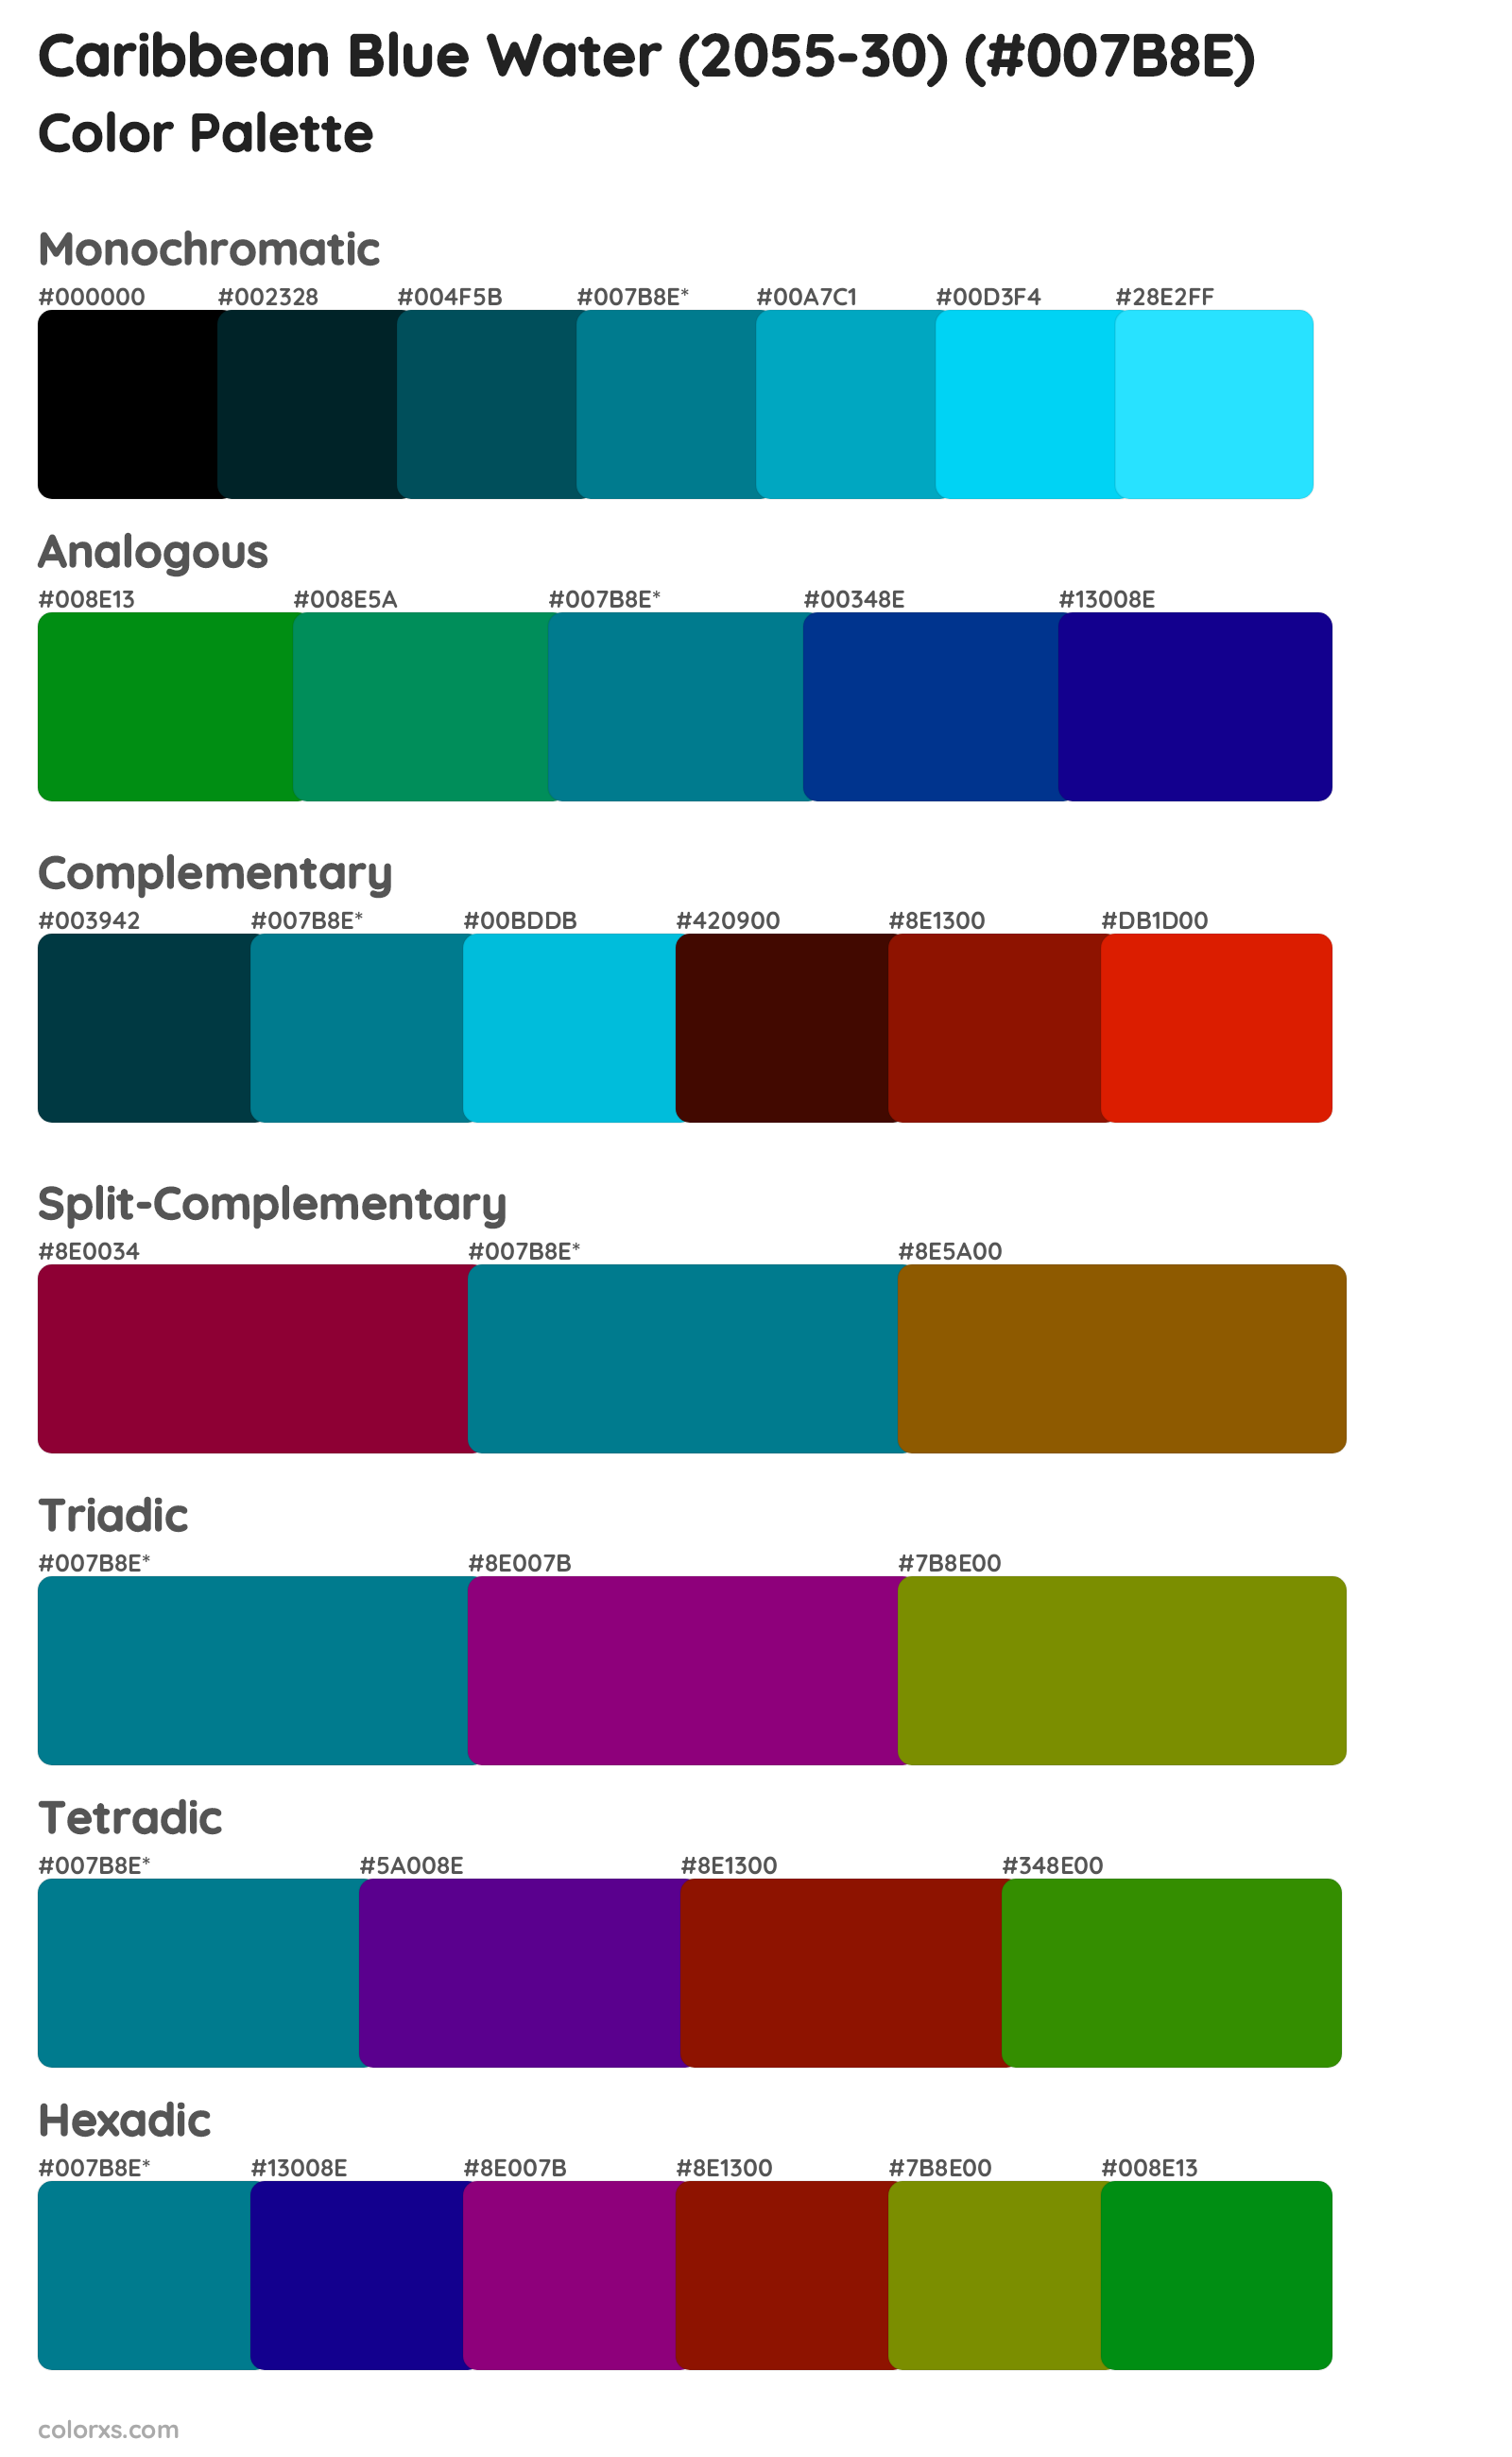 Caribbean Blue Water (2055-30) Color Scheme Palettes